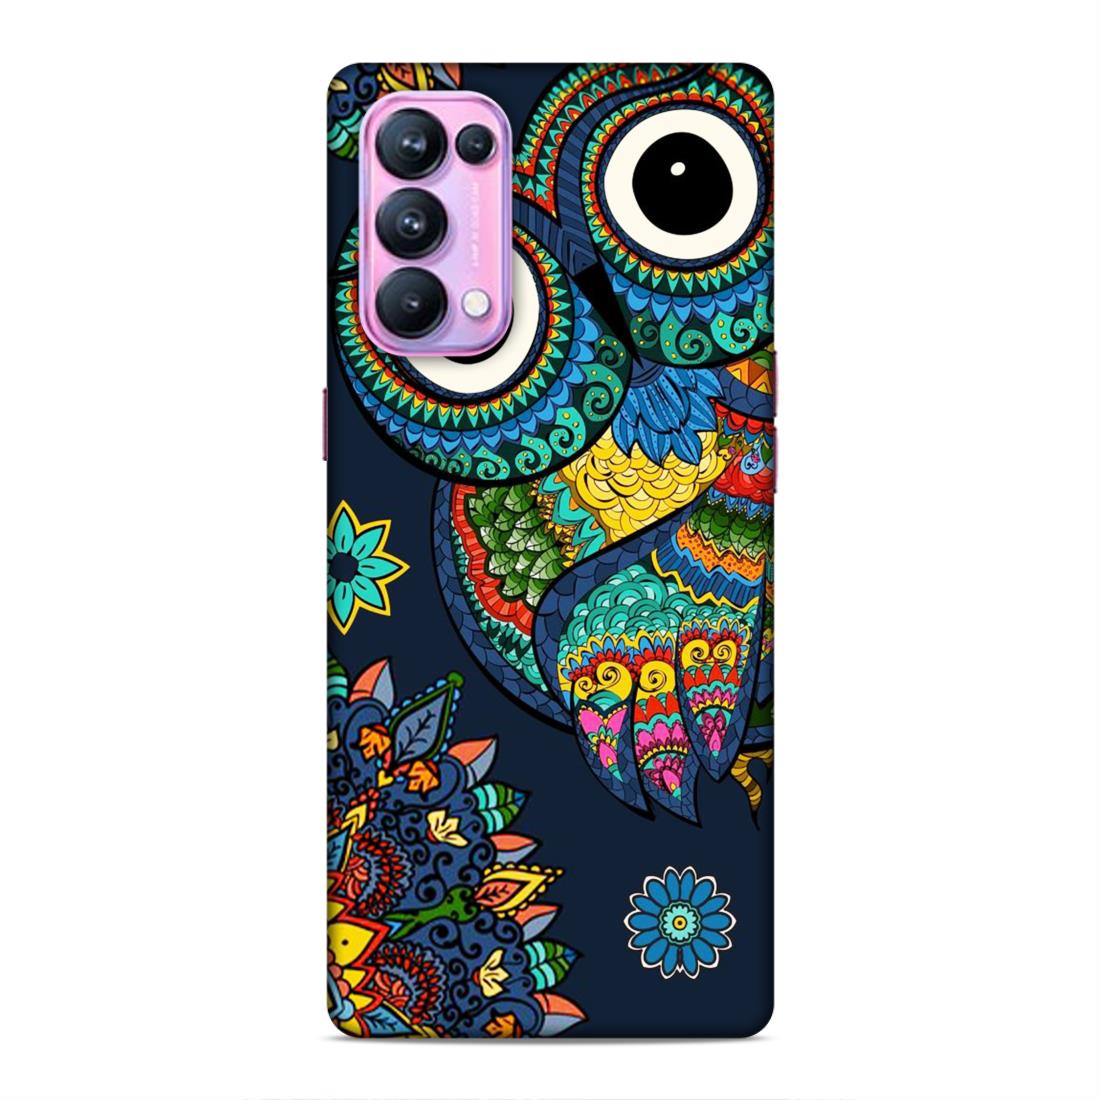 Owl and Mandala Flower Hard Back Case For Oppo Reno 5 Pro